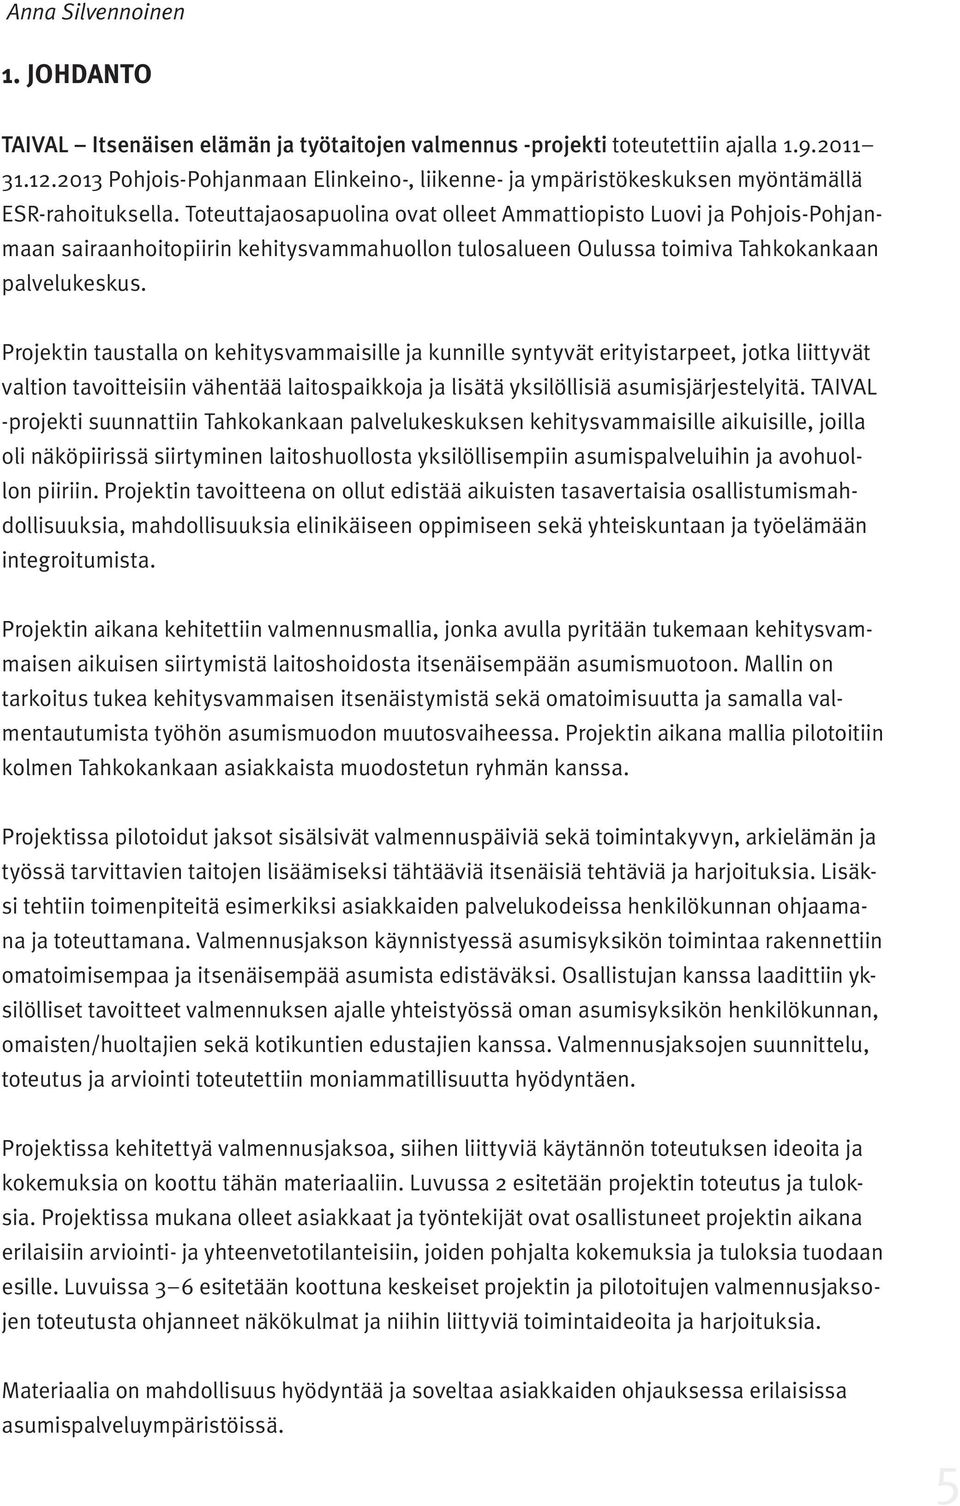 Toteuttajaosapuolina ovat olleet Ammattiopisto Luovi ja Pohjois-Pohjanmaan sairaanhoitopiirin kehitysvammahuollon tulosalueen Oulussa toimiva Tahkokankaan palvelukeskus.